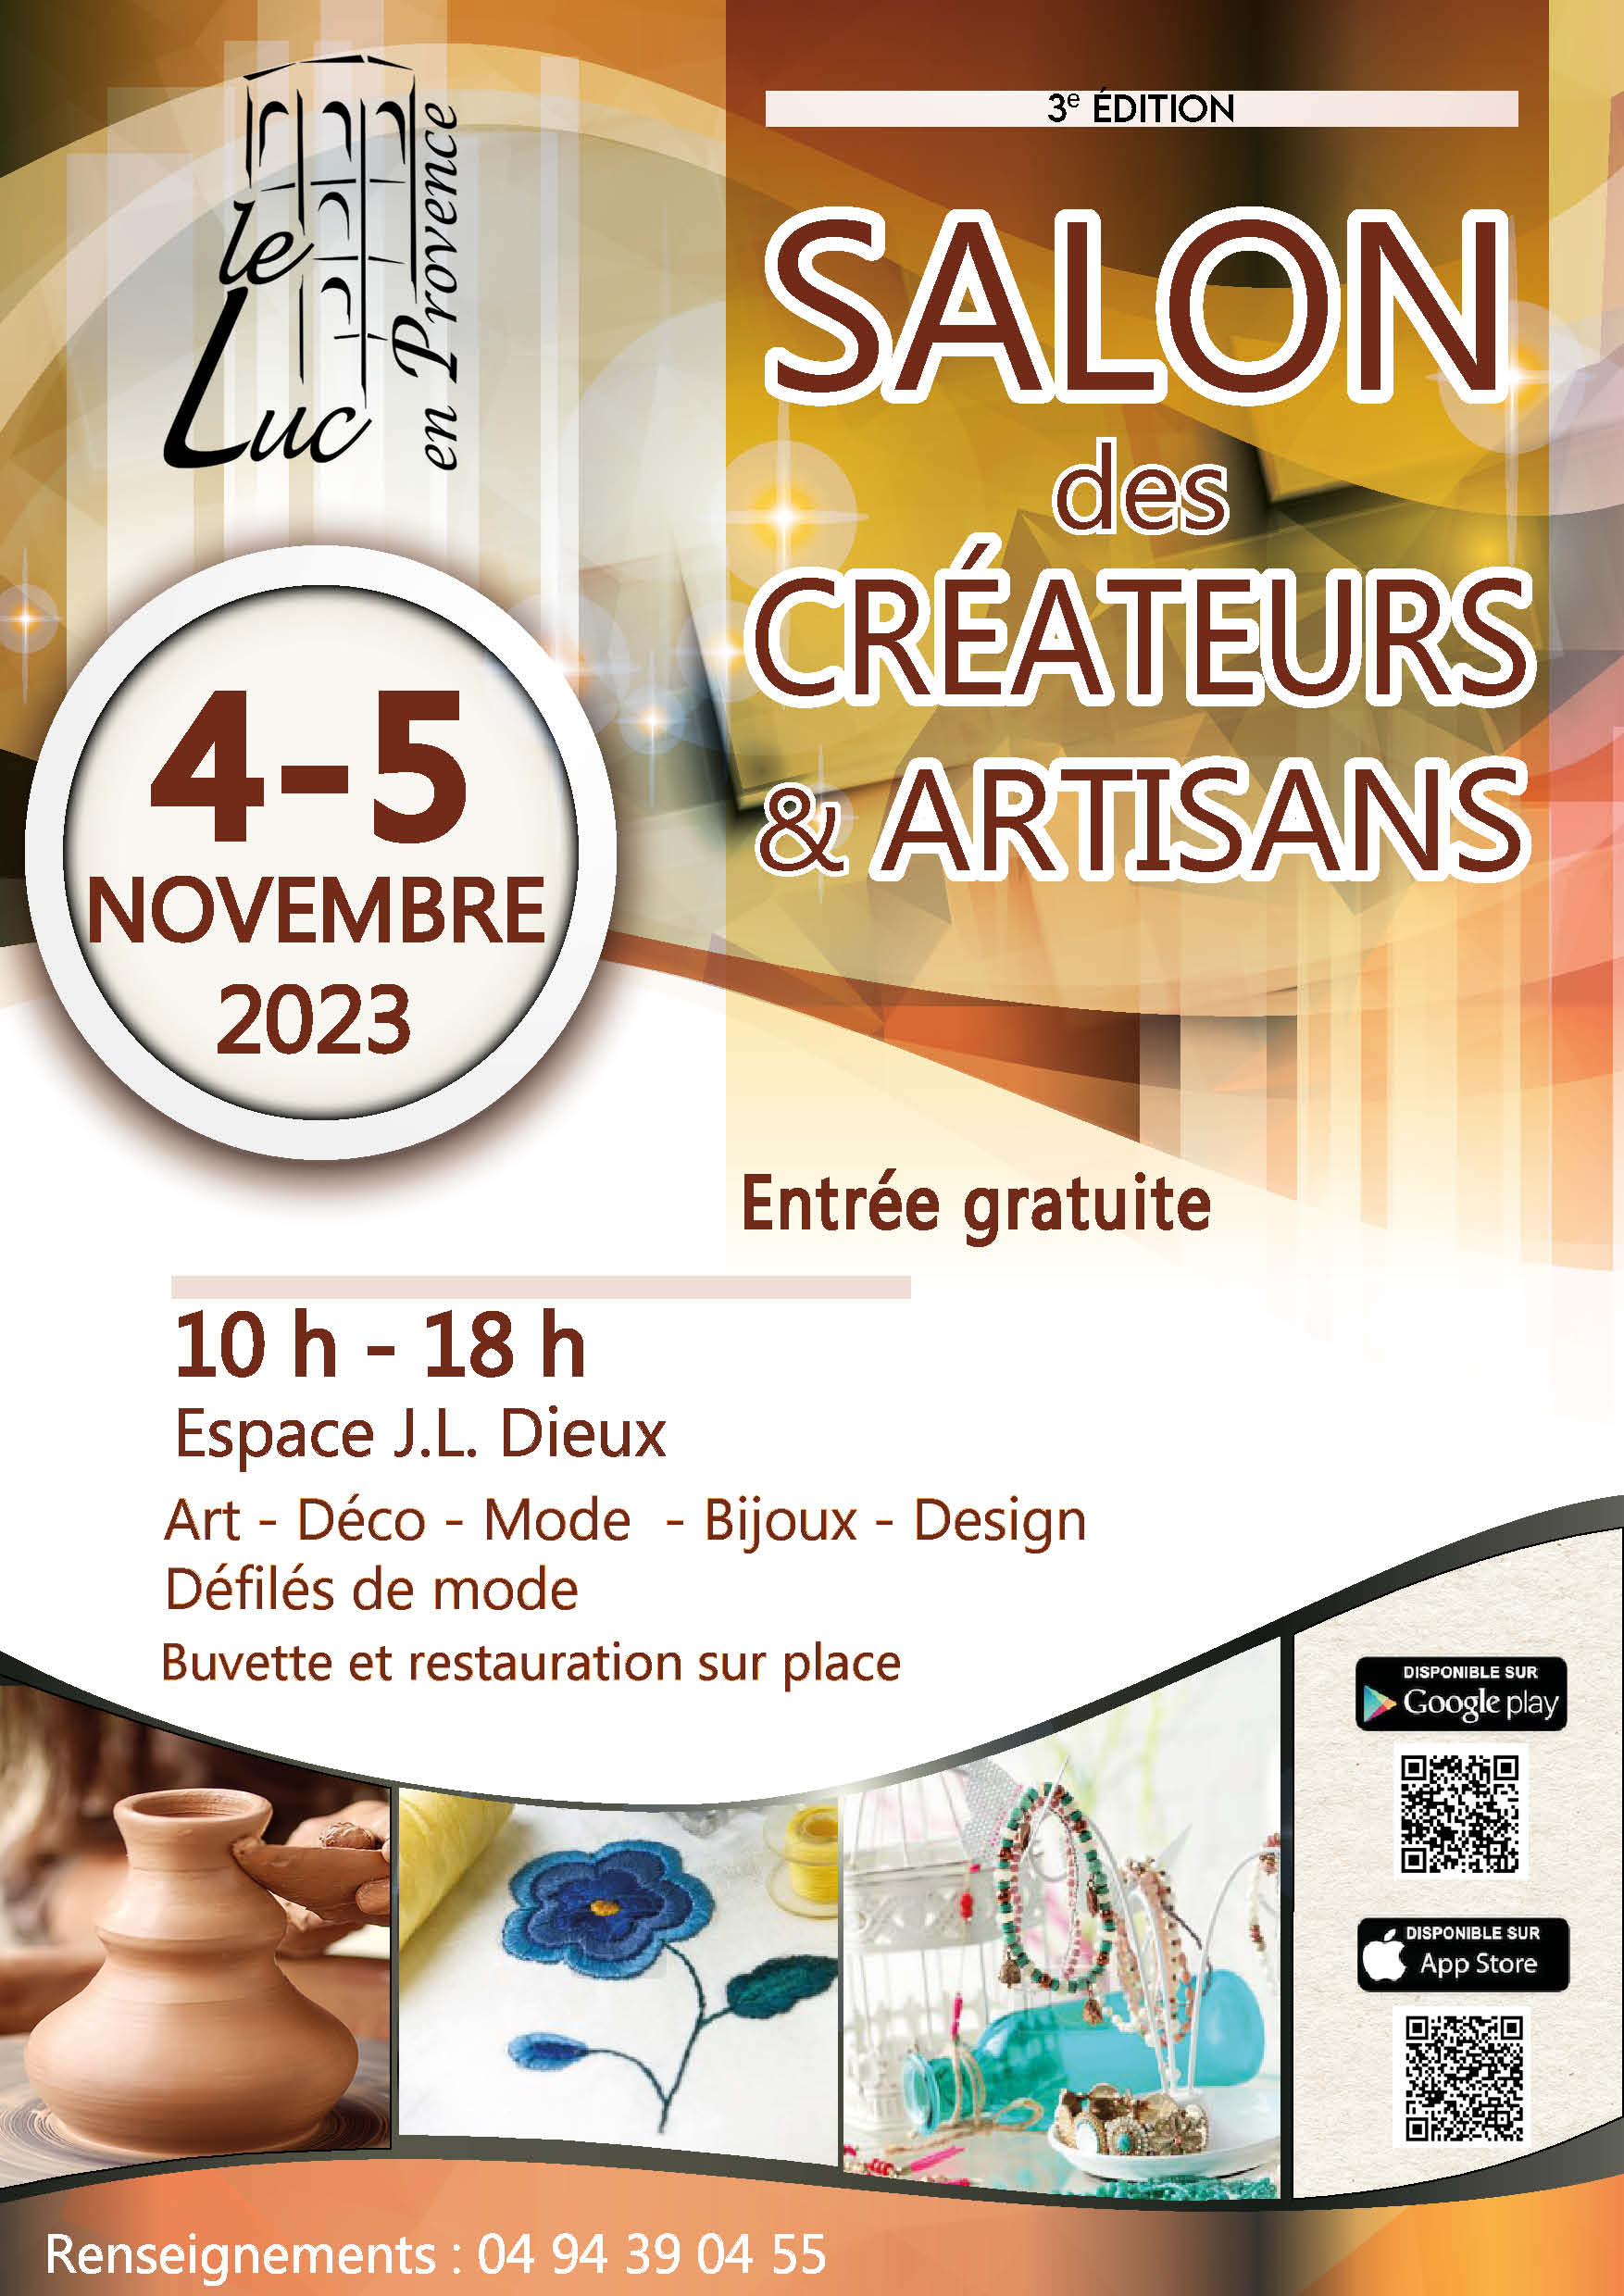 Samedi 4 et dimanche 5 novembre - "Salon des créateurs & artisans" (3e  édition) - Site officiel de la ville